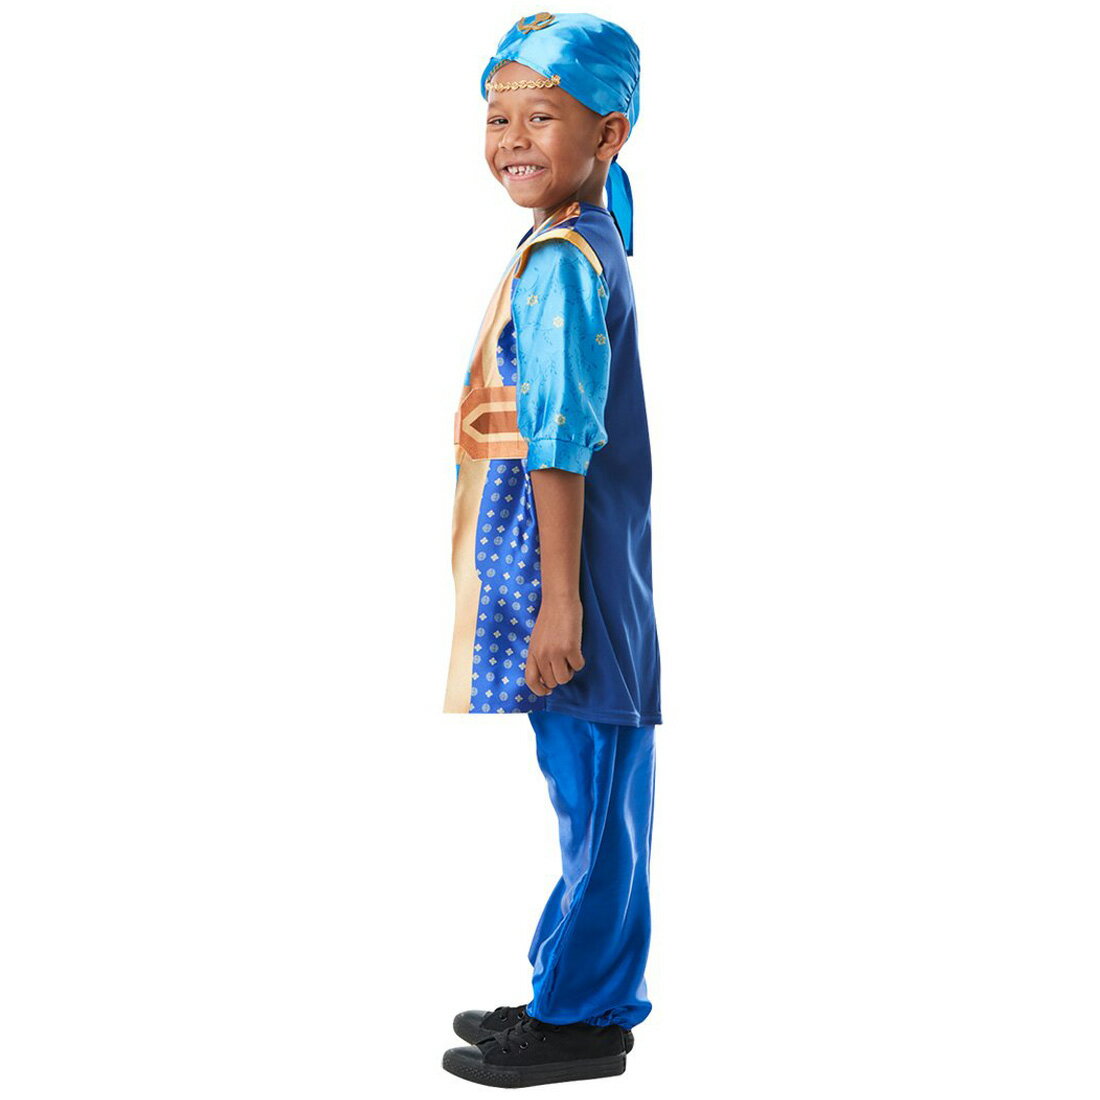 ハロウィン5歳男の子 絶対可愛い ディズニー衣装 コスプレのおすすめプレゼントランキング 予算5 000円以内 Ocruyo オクルヨ